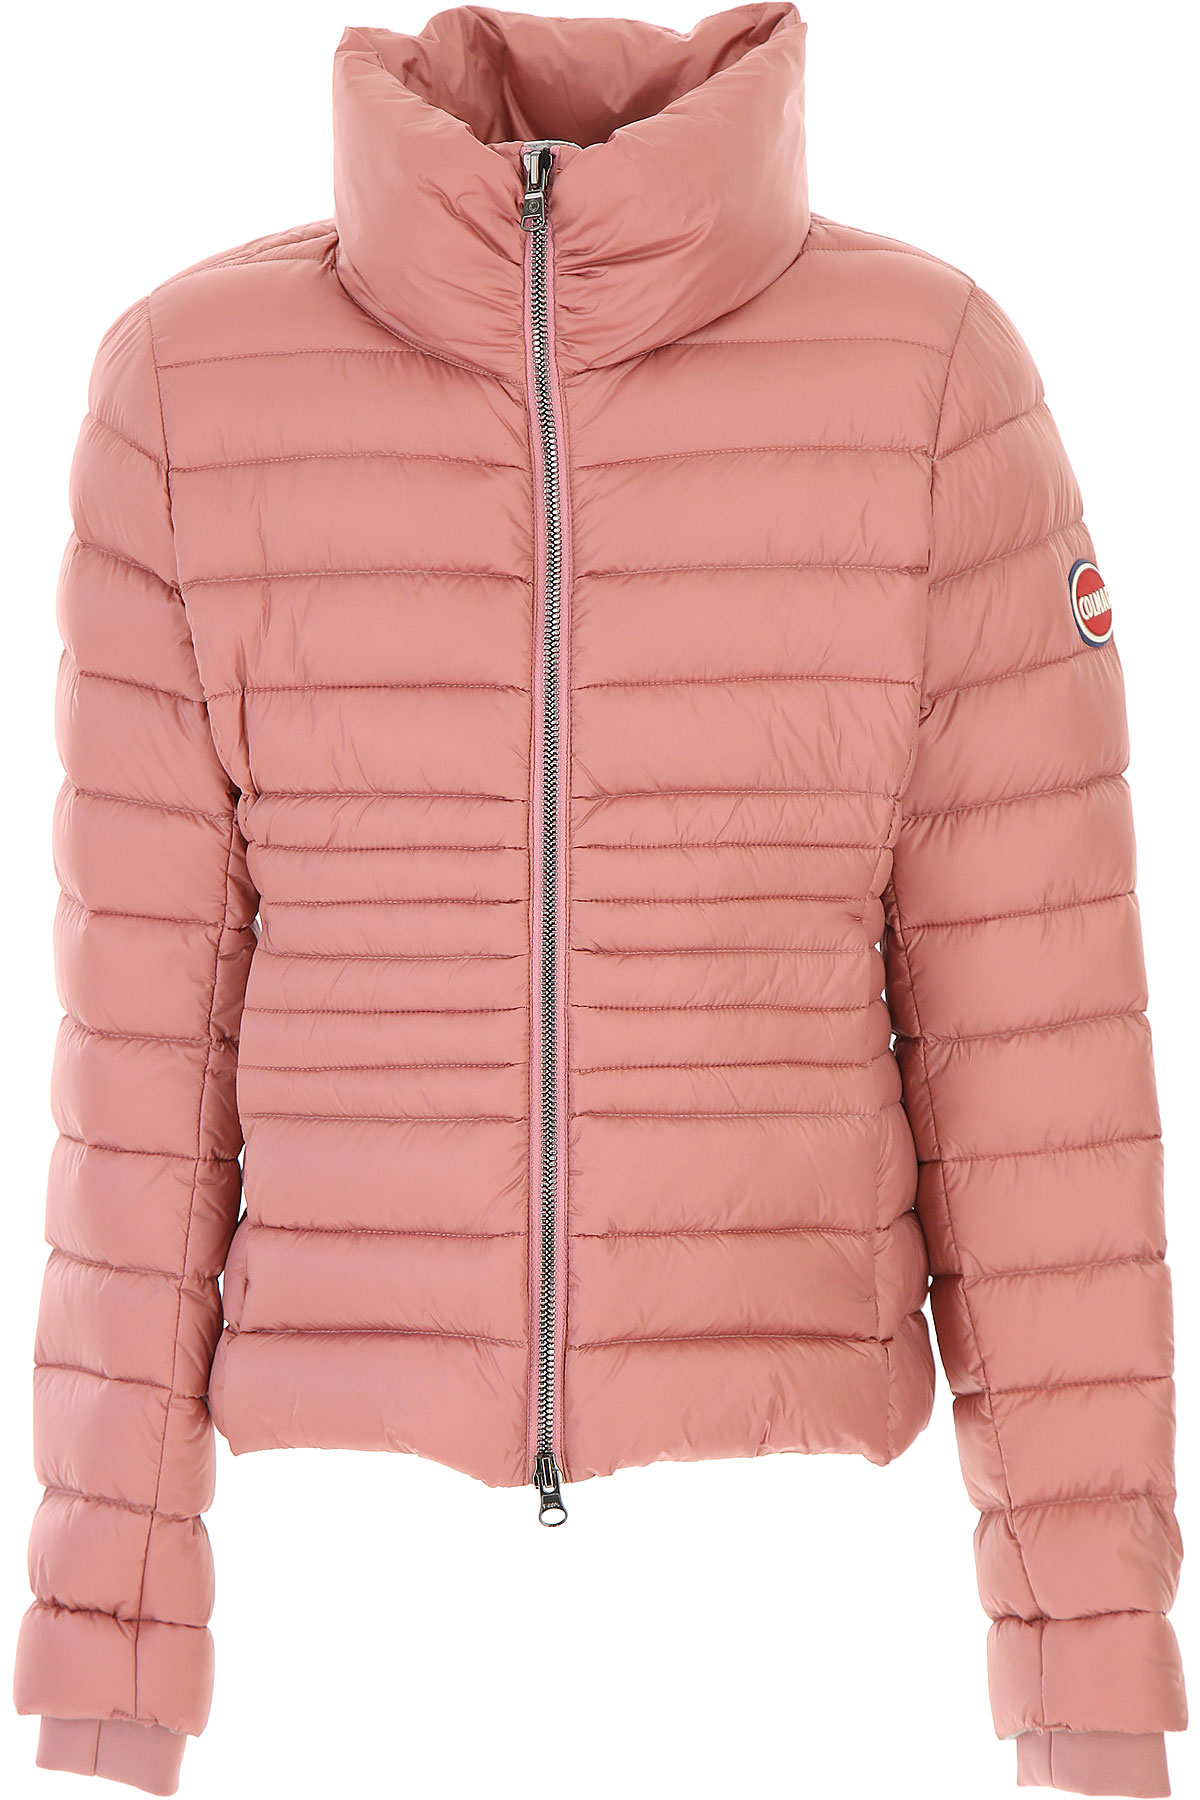 Colmar Kinder Daunen Jacke für Mädchen, Soft Shell Ski Jacken Günstig im Sale, Barock Pink, Polyamid, 2017, 6Y 8Y